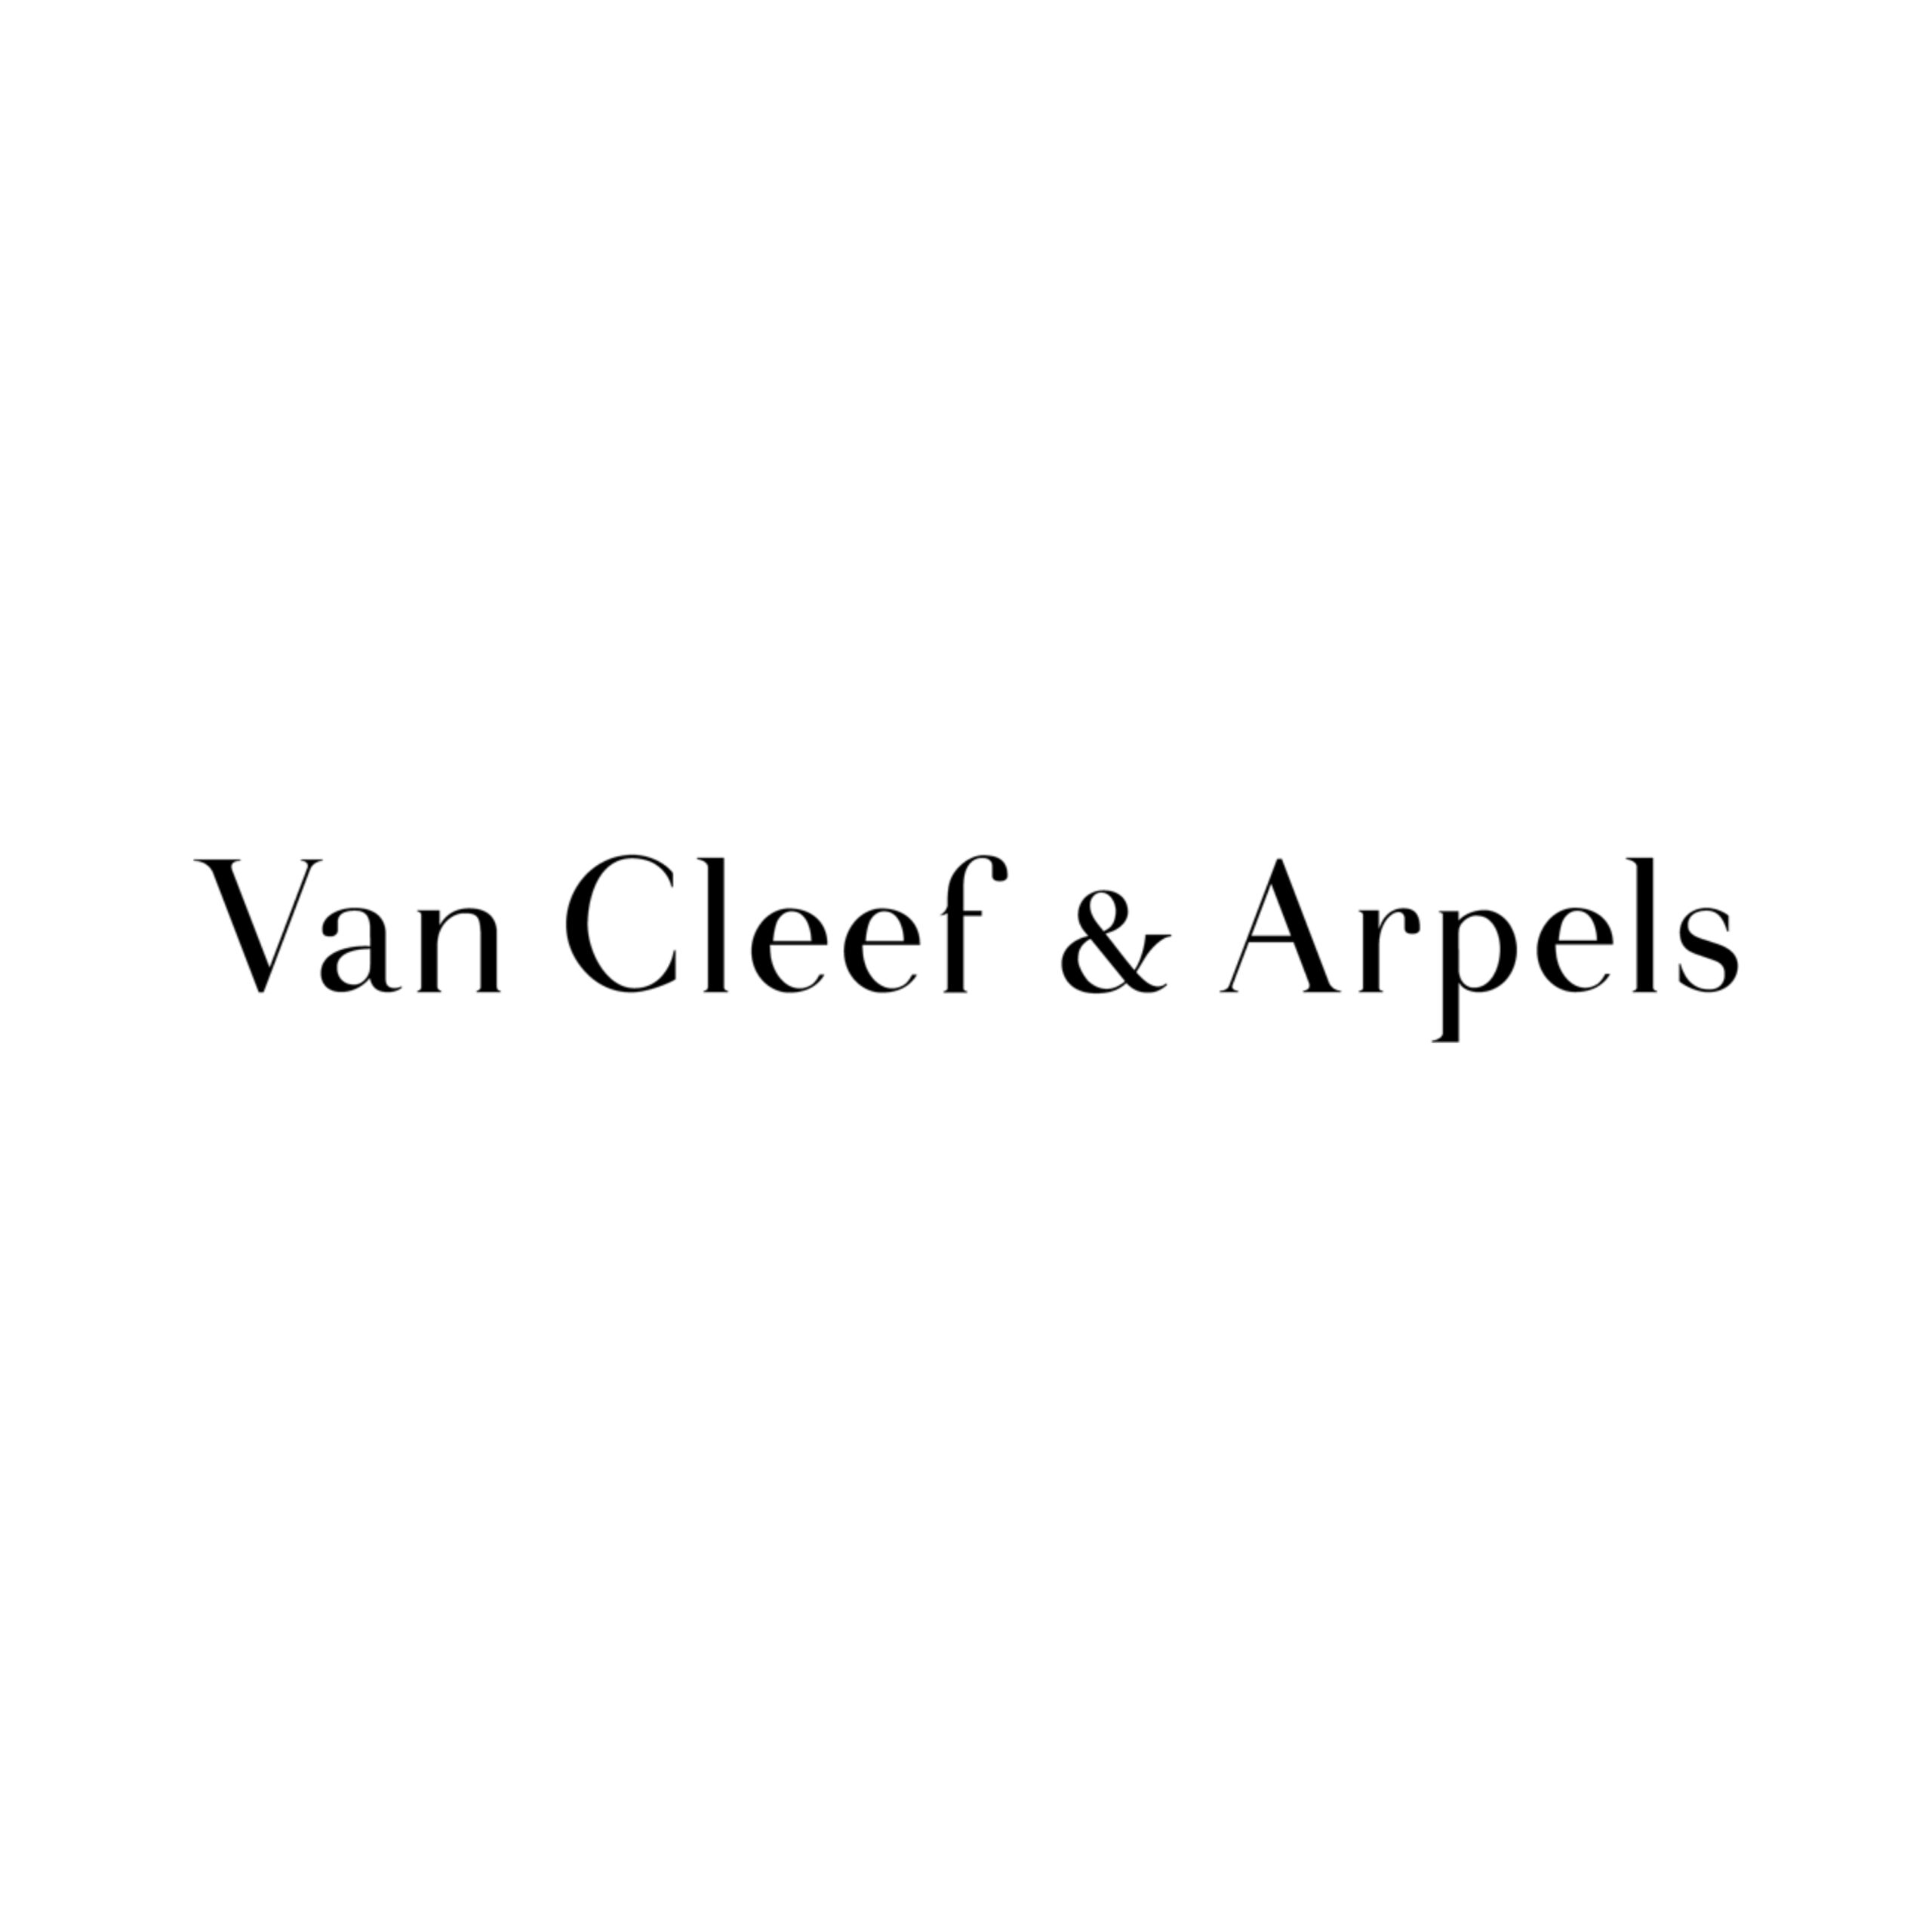 Van Cleef